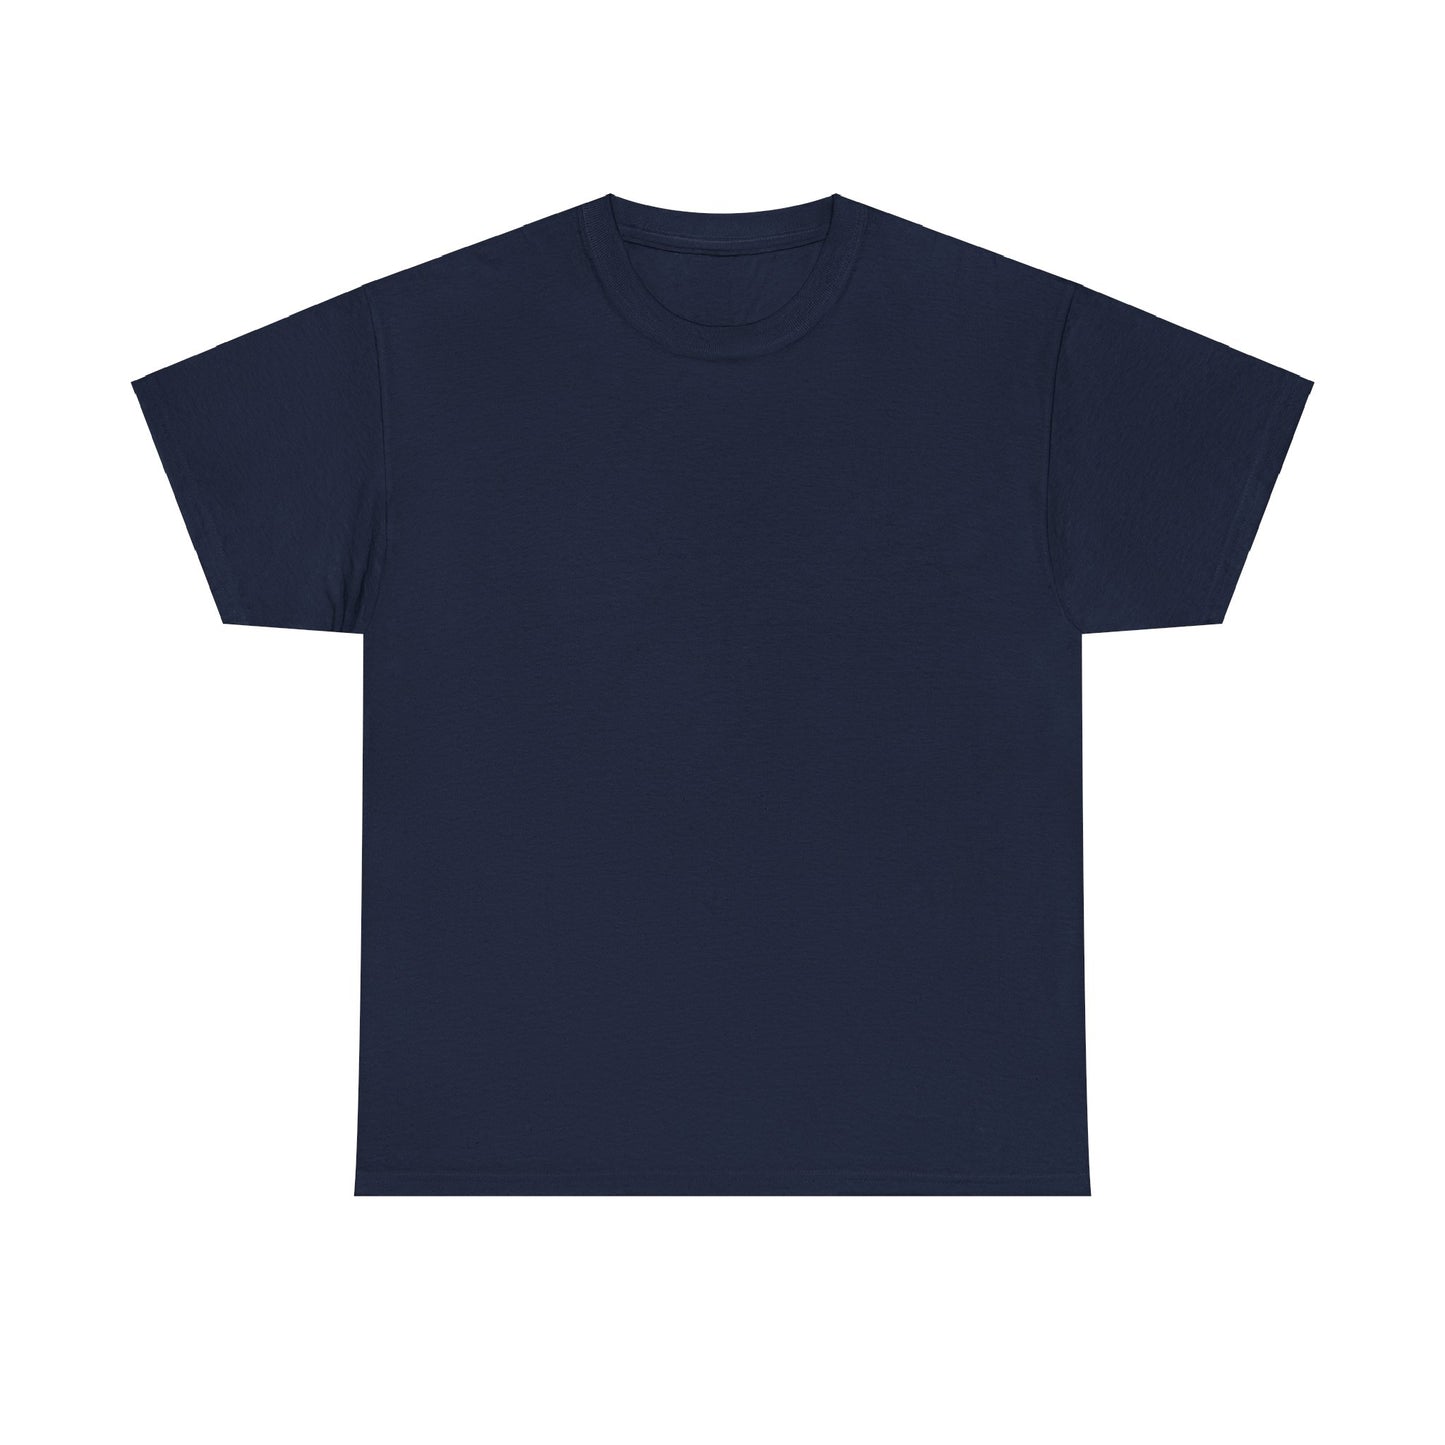 T-shirt à manches courtes à imprimé unisexe -FLOWER MARKET- pour adulte